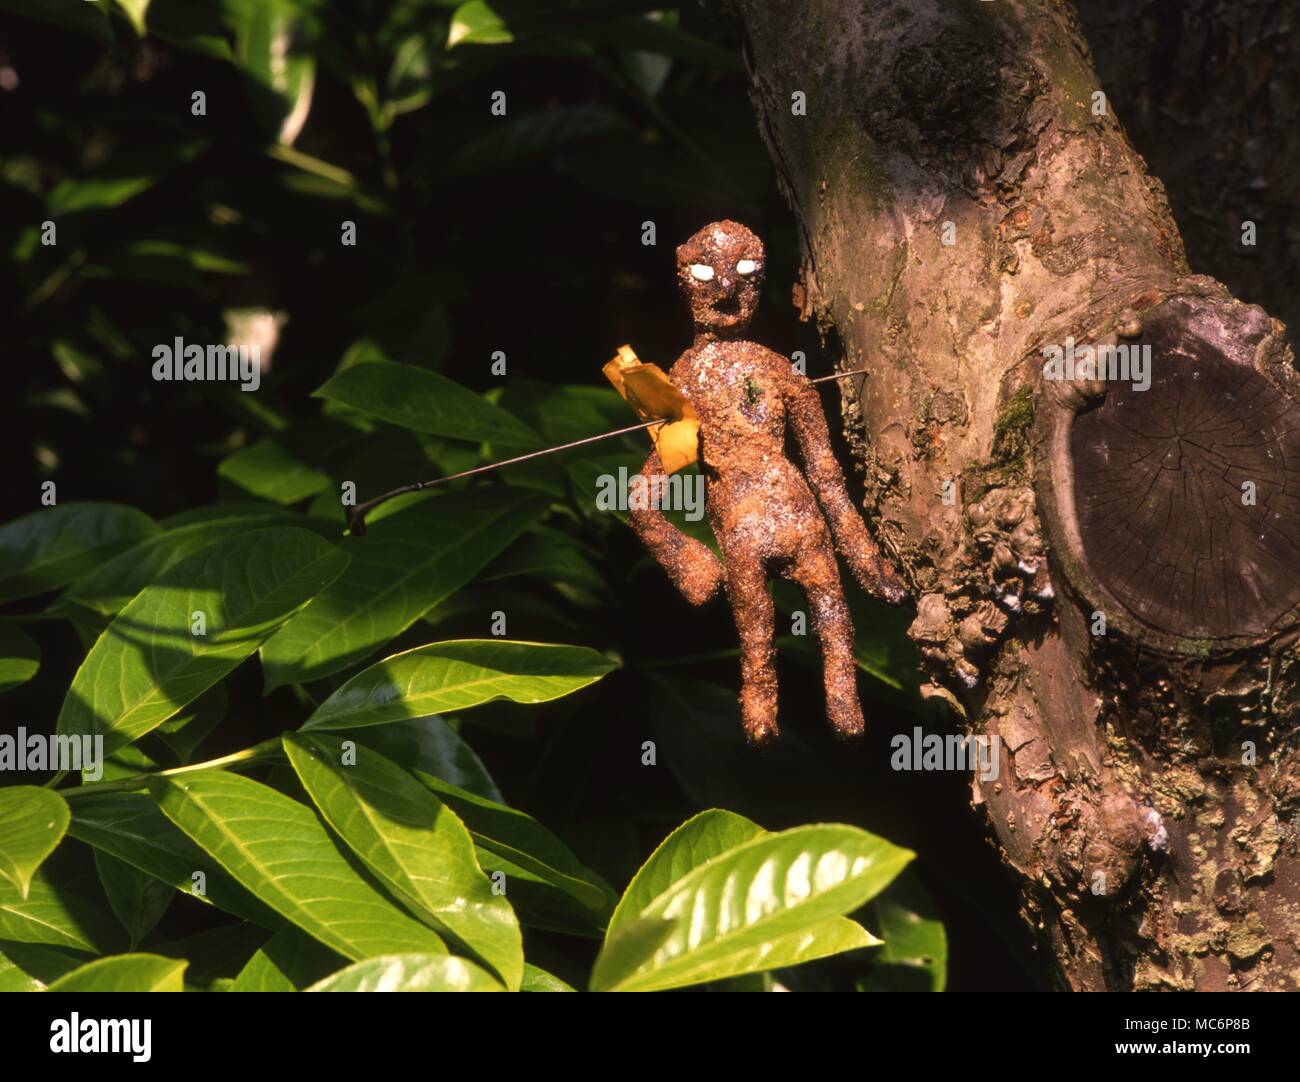 Fluch doll, einen gefertigten Puppe, aufgespießt auf einen Baum, um schmerzhafte Erkrankung oder des Todes des Opfers auf der aufgespießt Blatt Papier zu bringen. Stockfoto